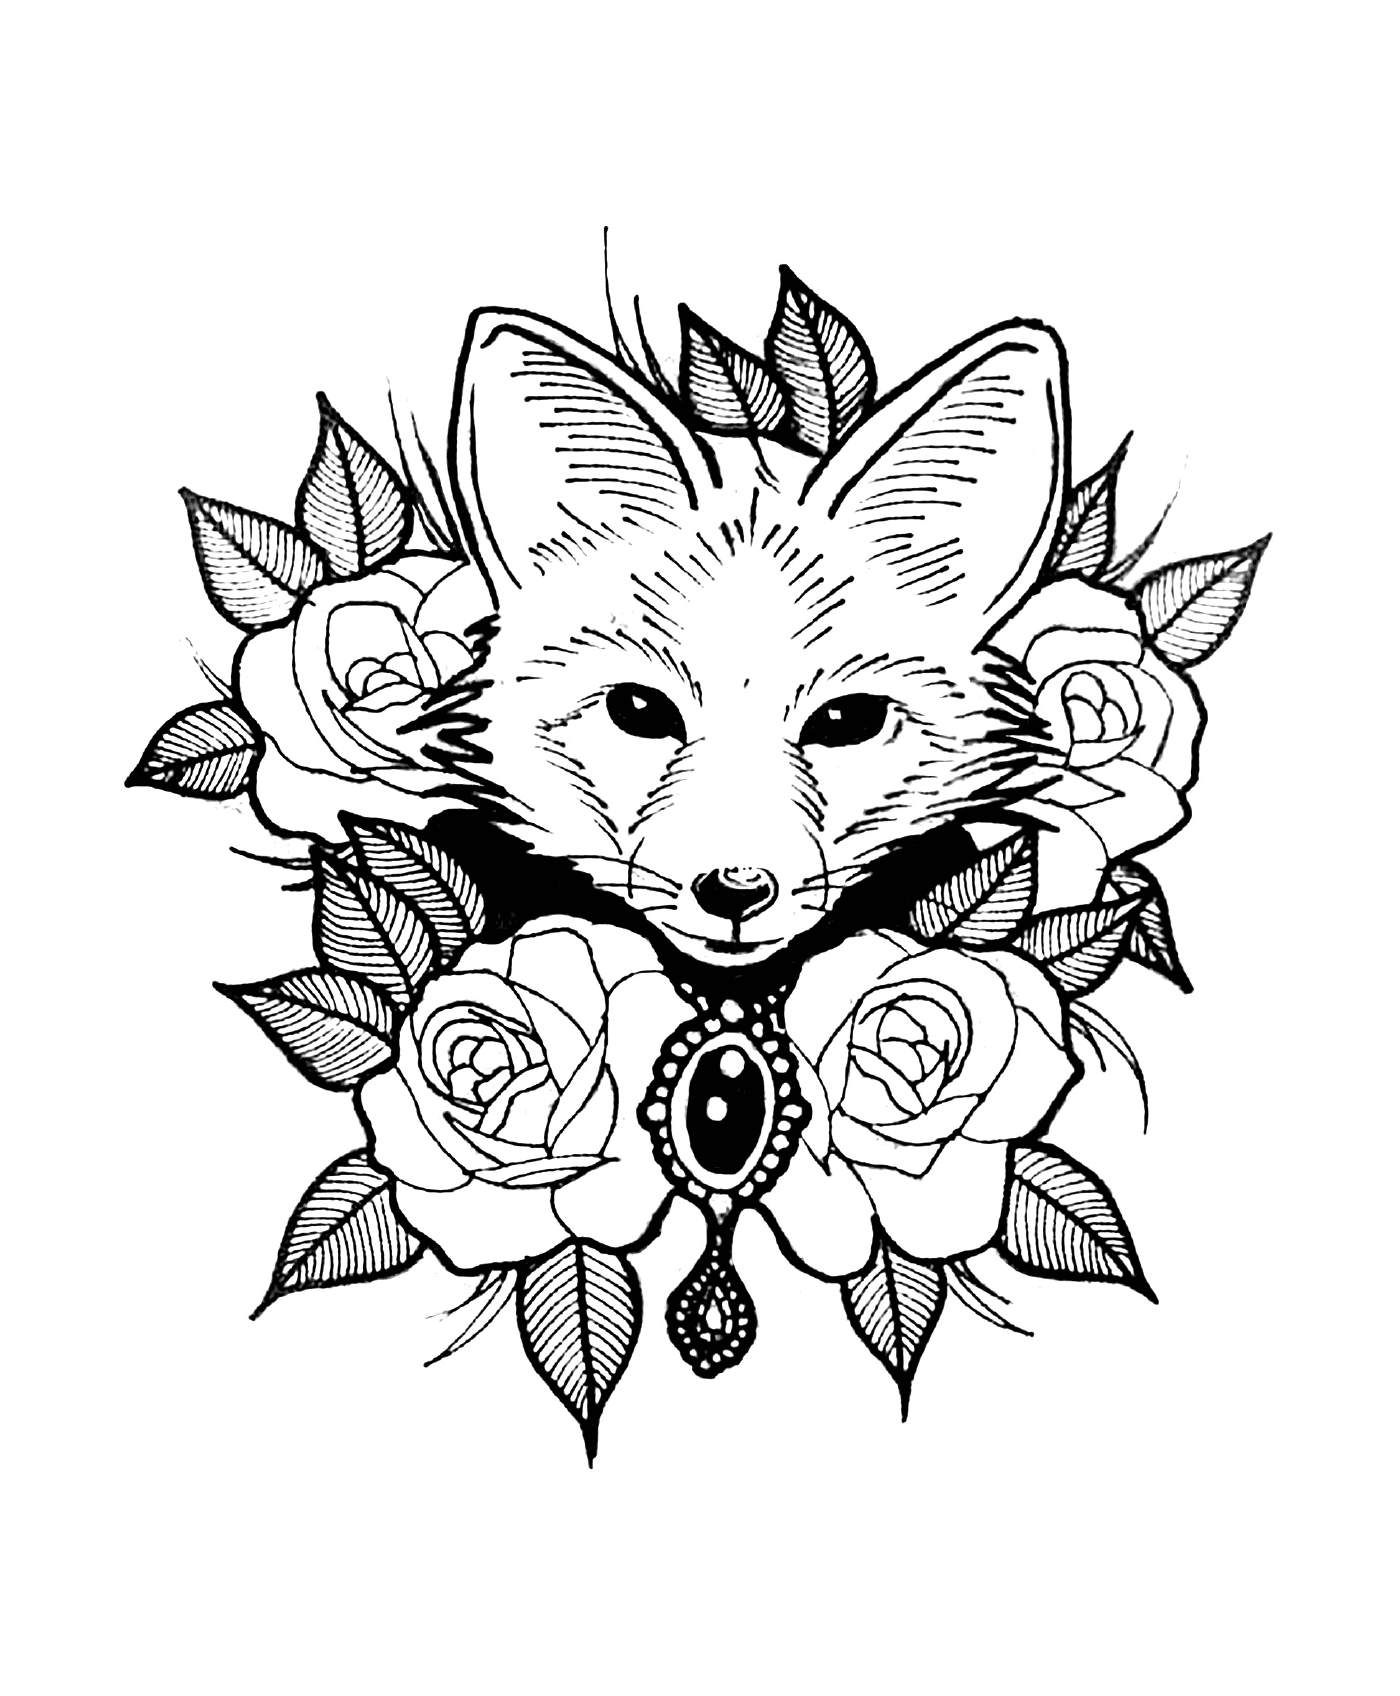  狐和玫瑰,纹身风格 